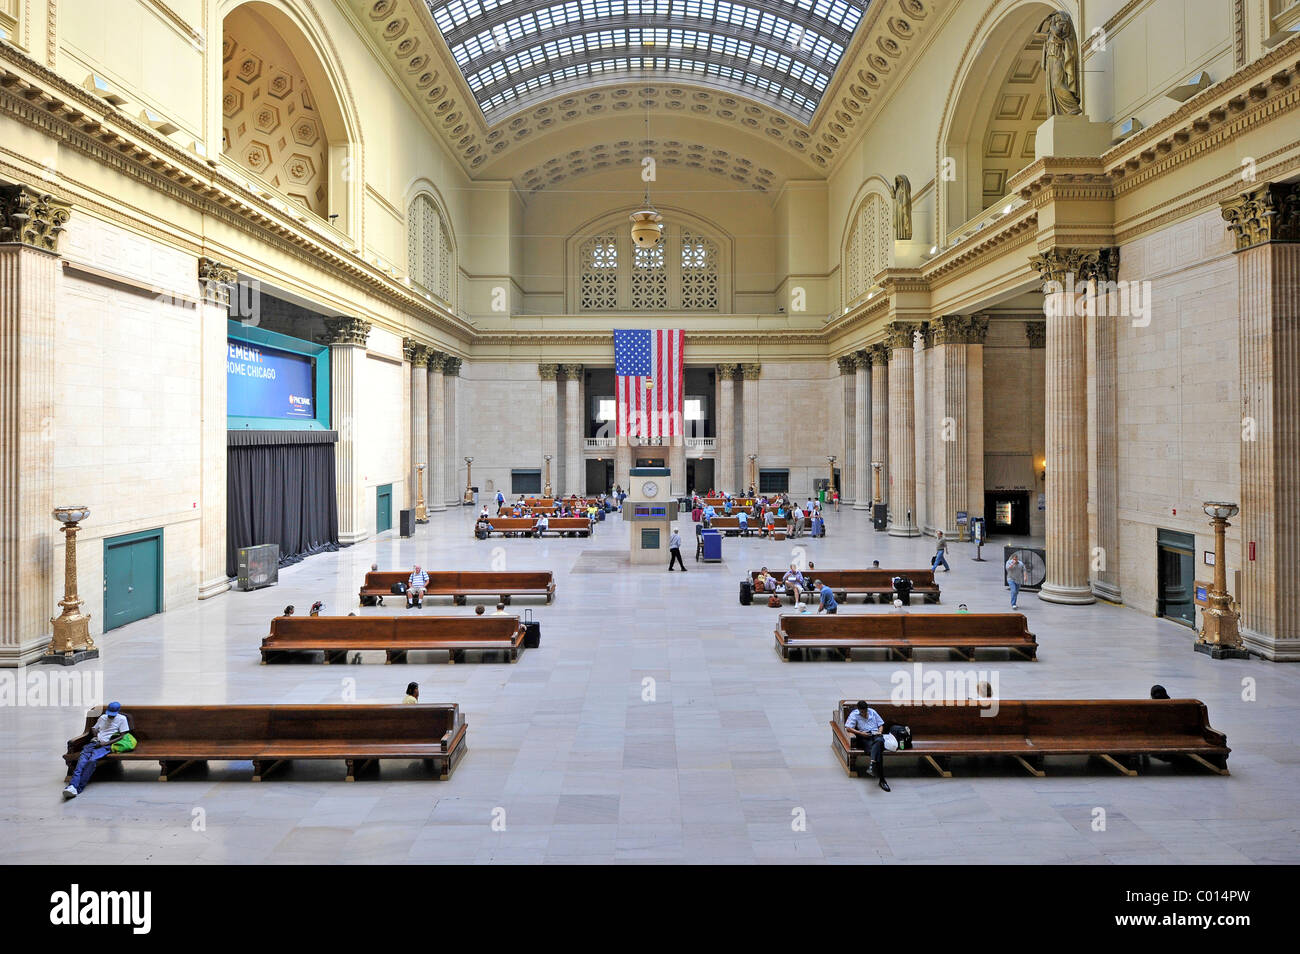 Vue intérieure de la grande salle, salle d'attente principale, Union Station, Chicago, Illinois, États-Unis d'Amérique, USA Banque D'Images